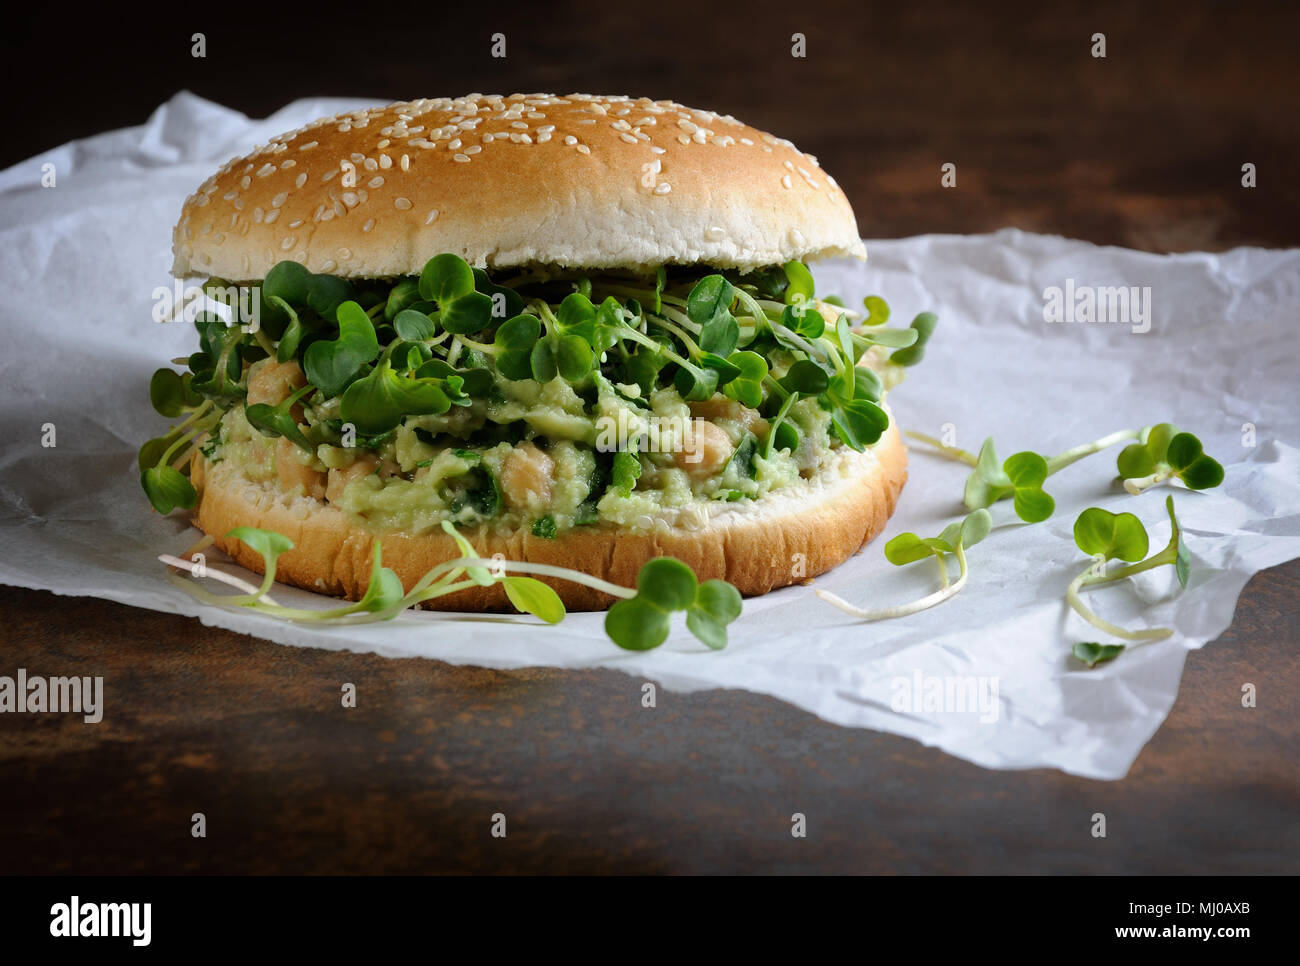 Un burger végétarien fait à partir d'un pain sans gluten avec les pois chiches, d'avocat et d'herbes, pousses de radis. Un dîner santé et rapide idée que vous vous sentez energi Banque D'Images